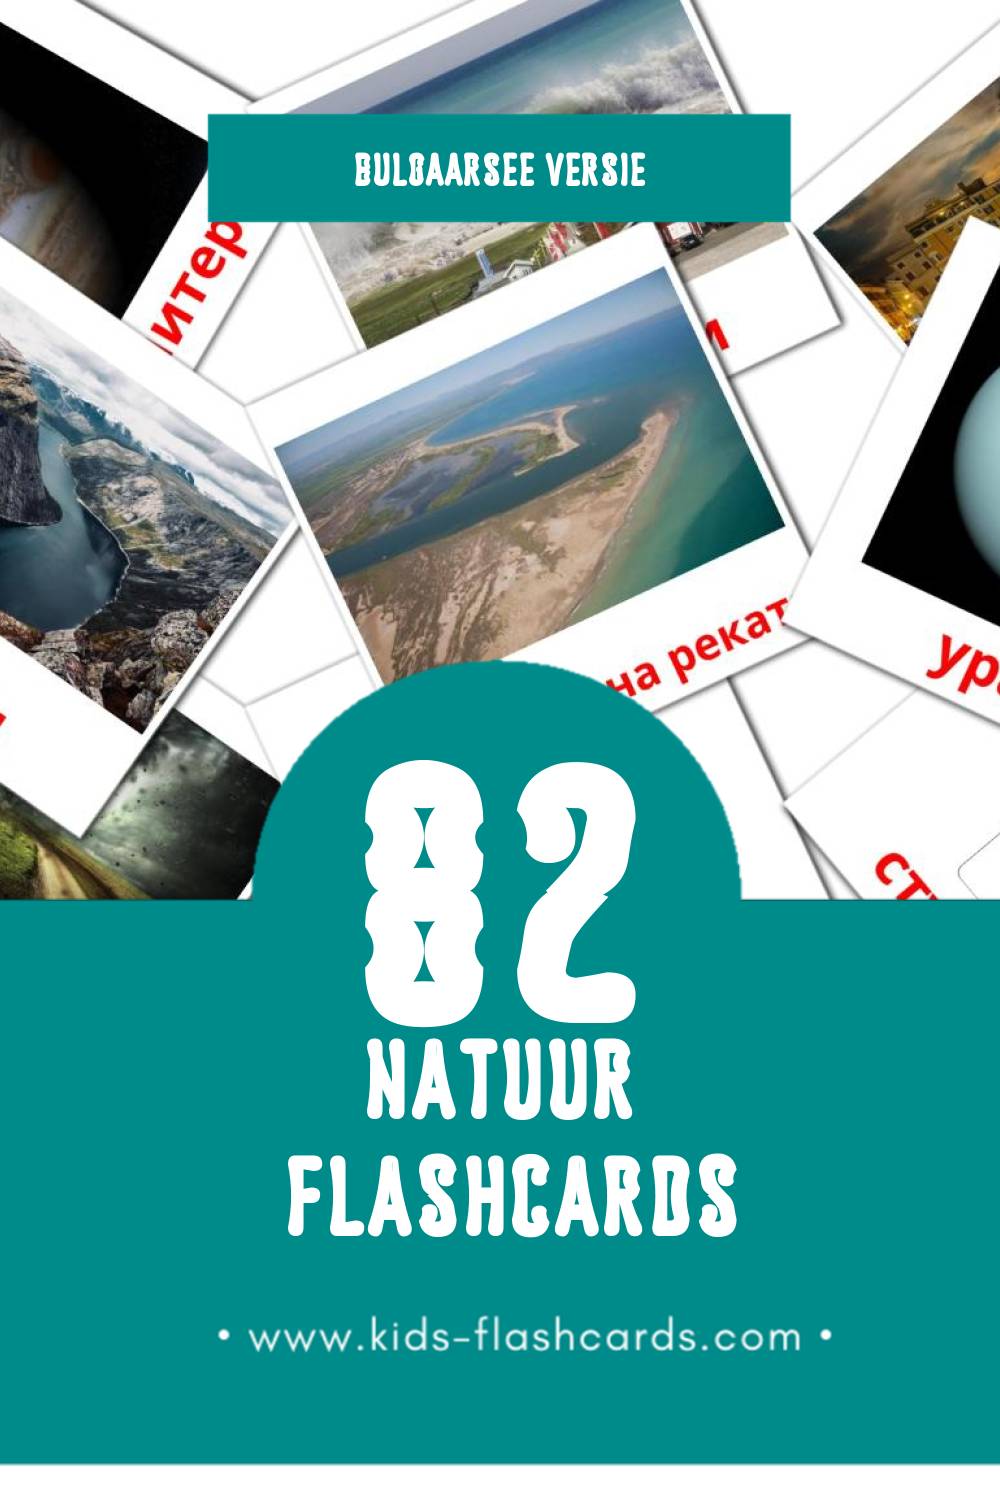 Visuele Природата Flashcards voor Kleuters (82 kaarten in het Bulgaarse)